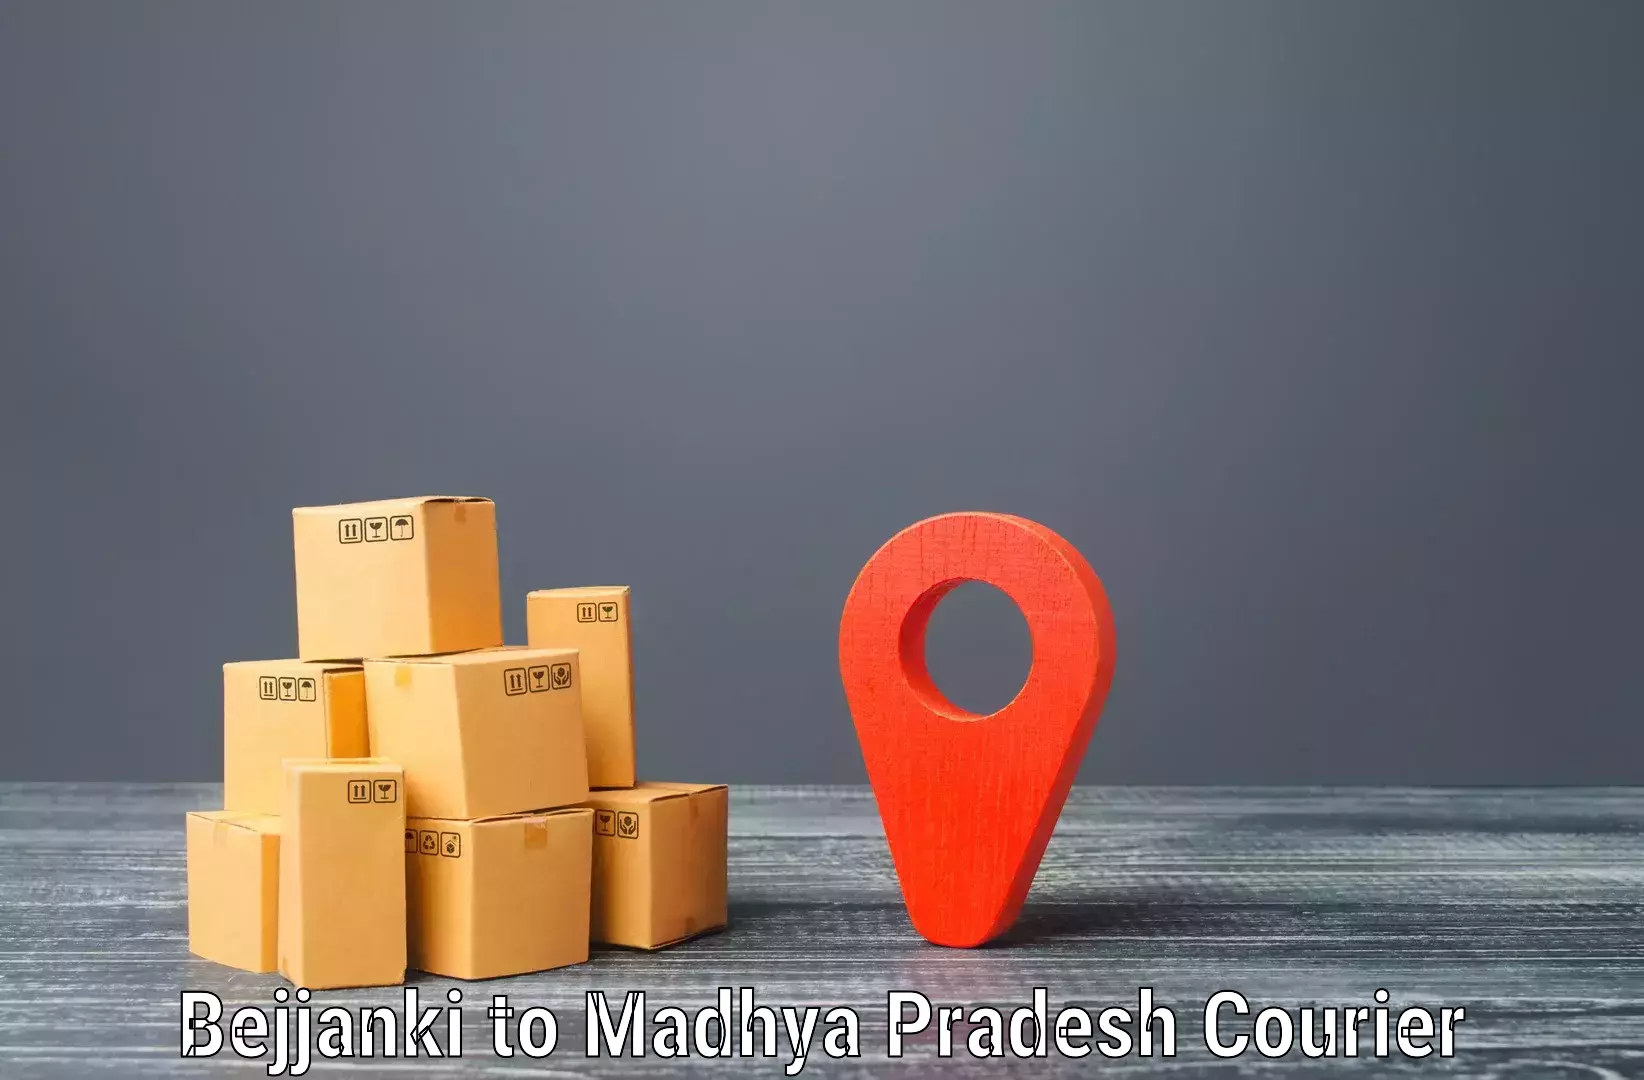 Premium courier solutions Bejjanki to Shahgarh